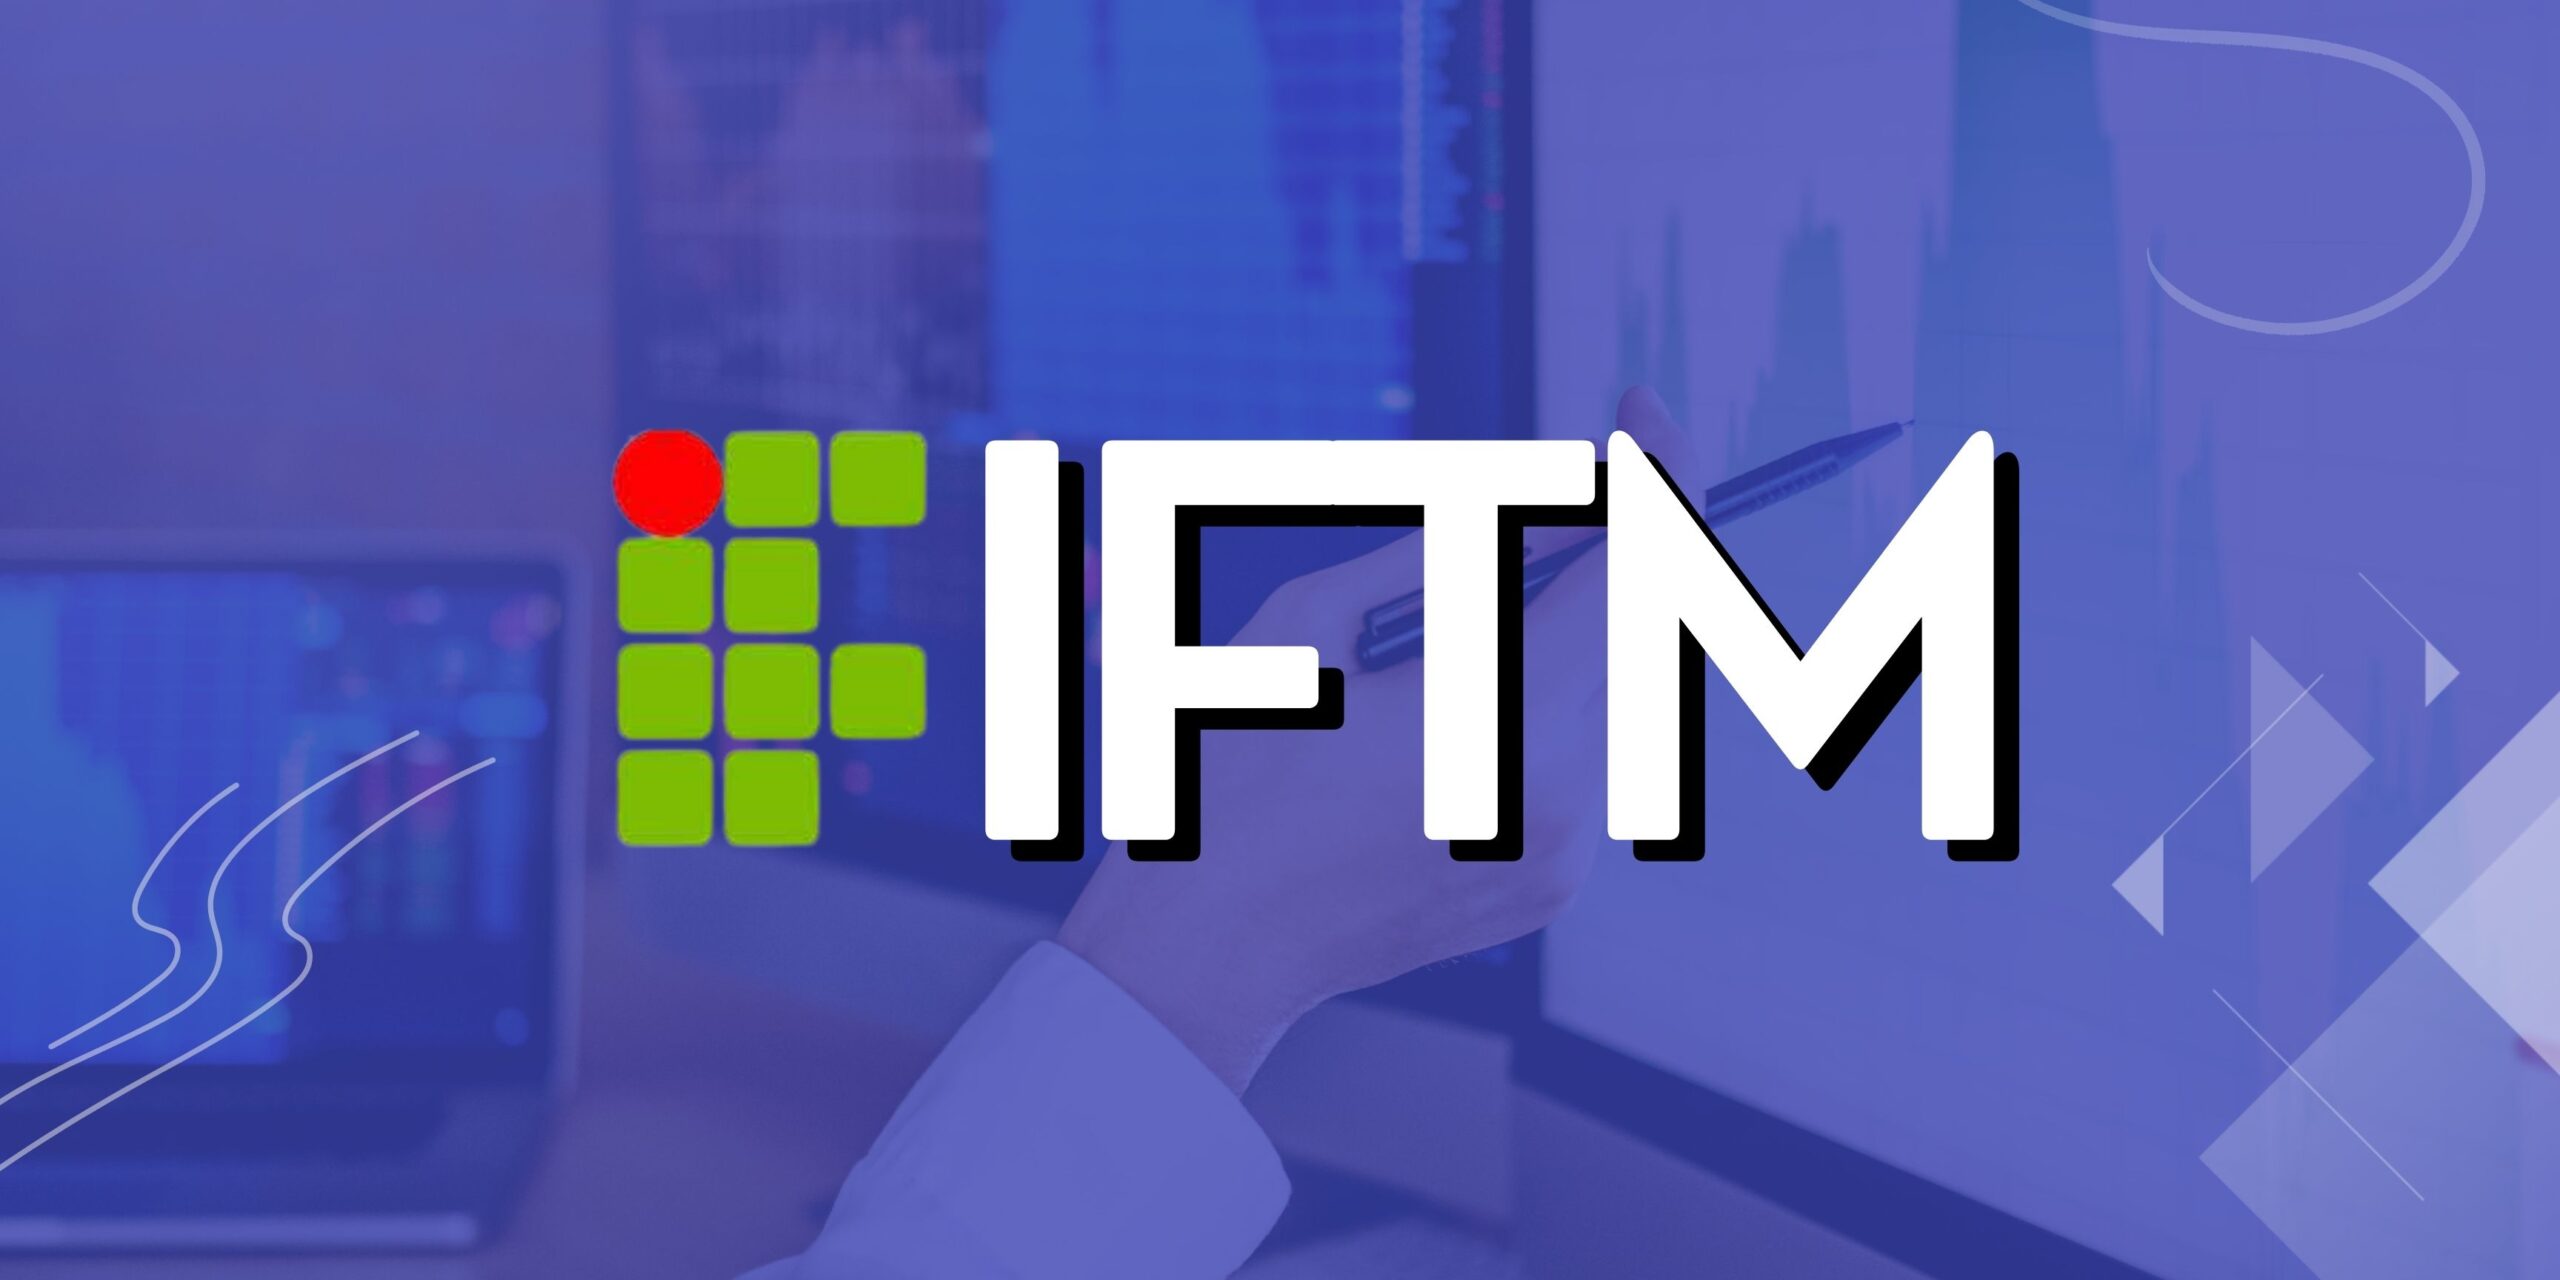 IFTM abre inscrições para quase 50 vagas ociosas de cursos de pós-graduação  - Educação - Estado de Minas